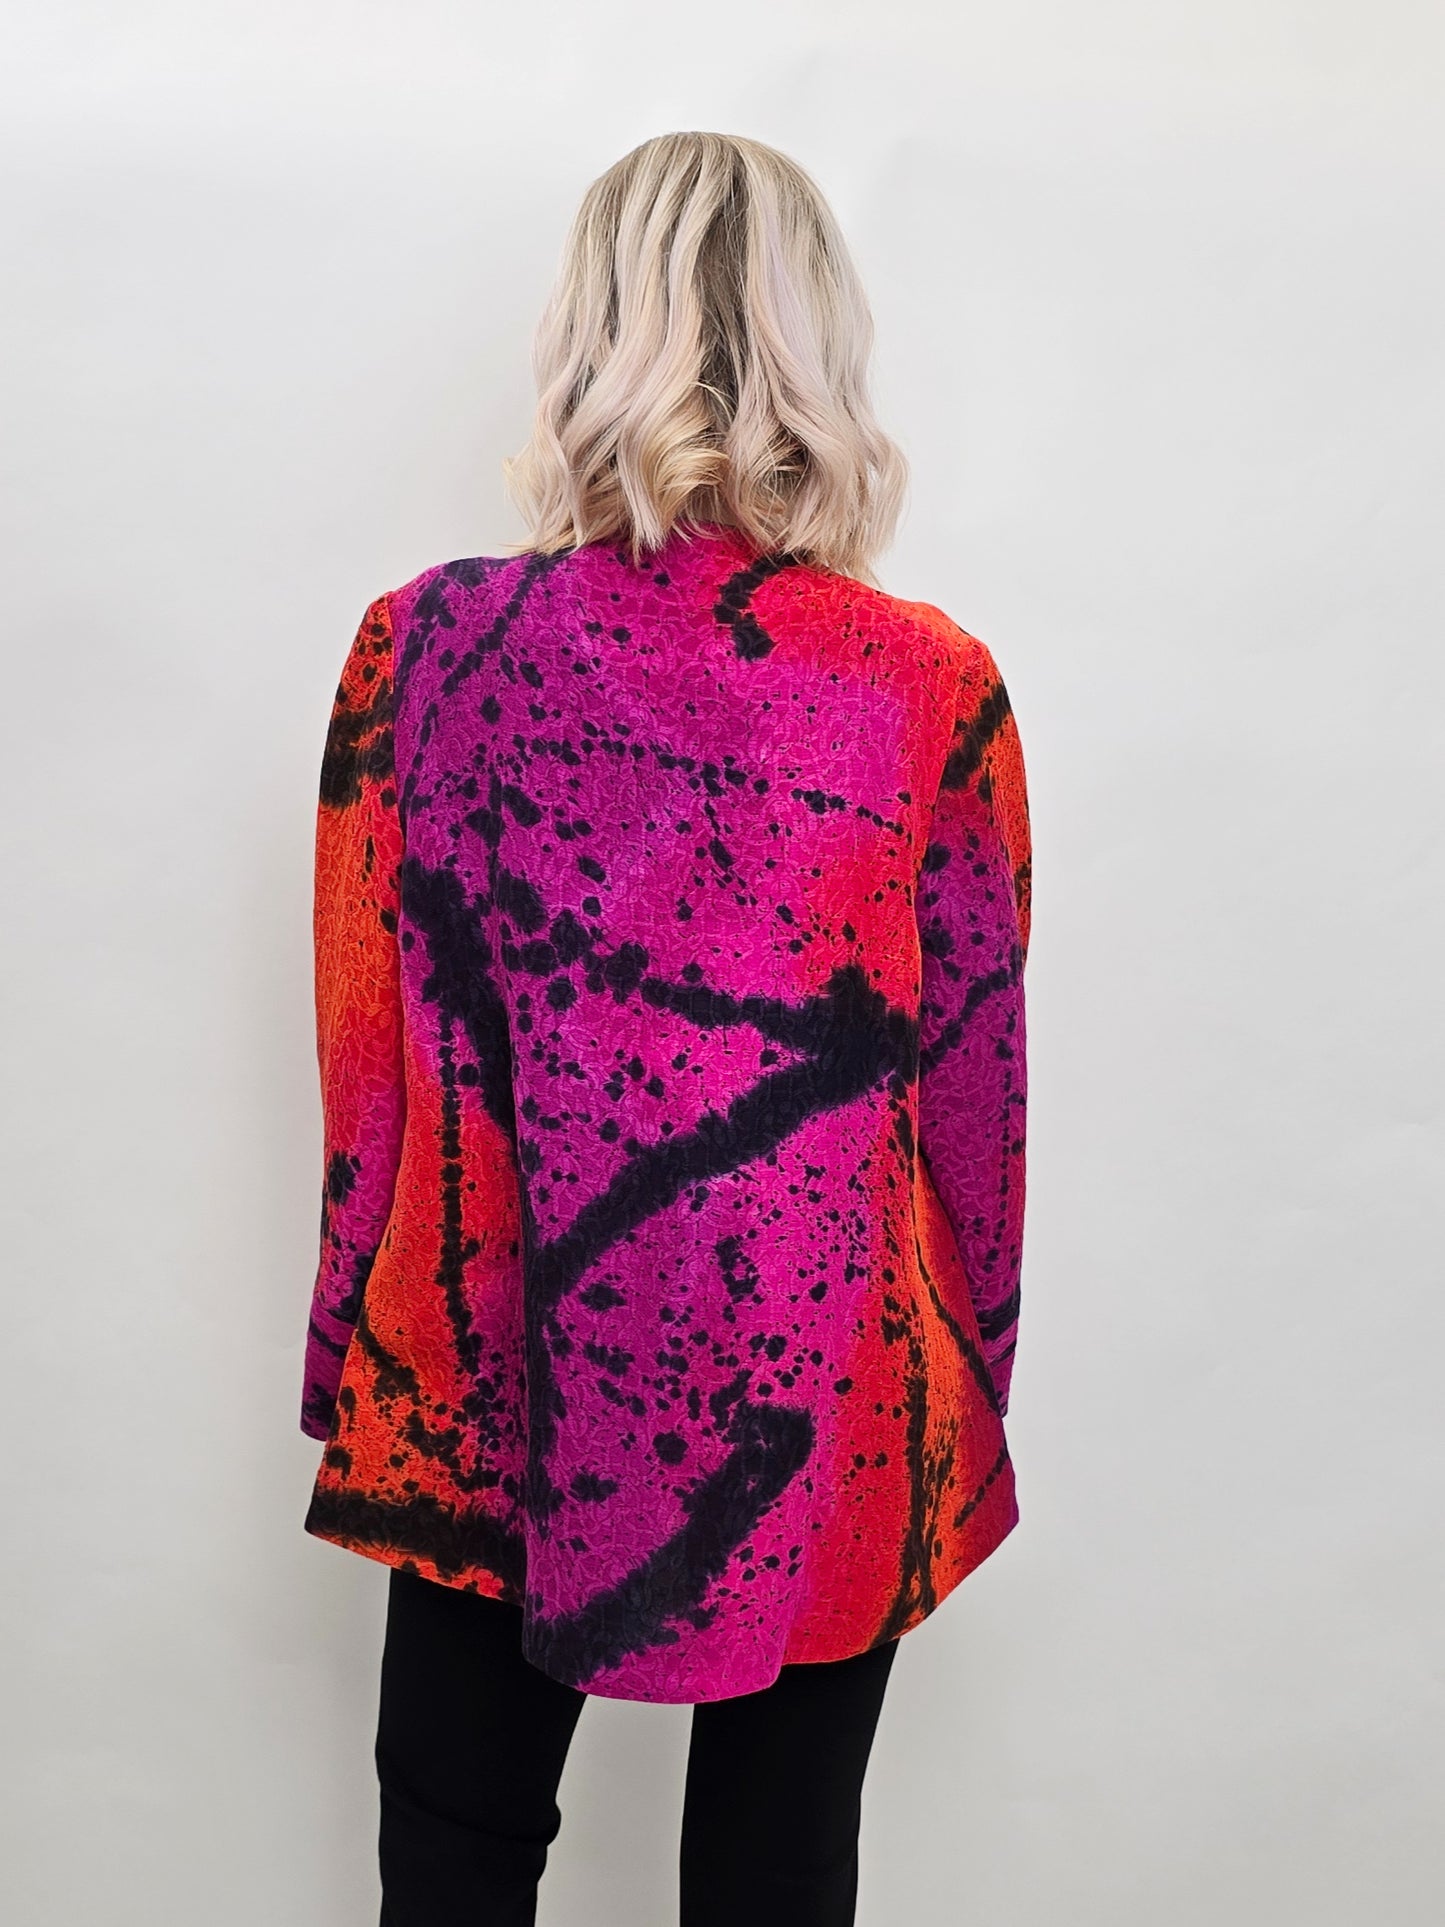 Kay Chapman Designs- Asymmetrical Jacket